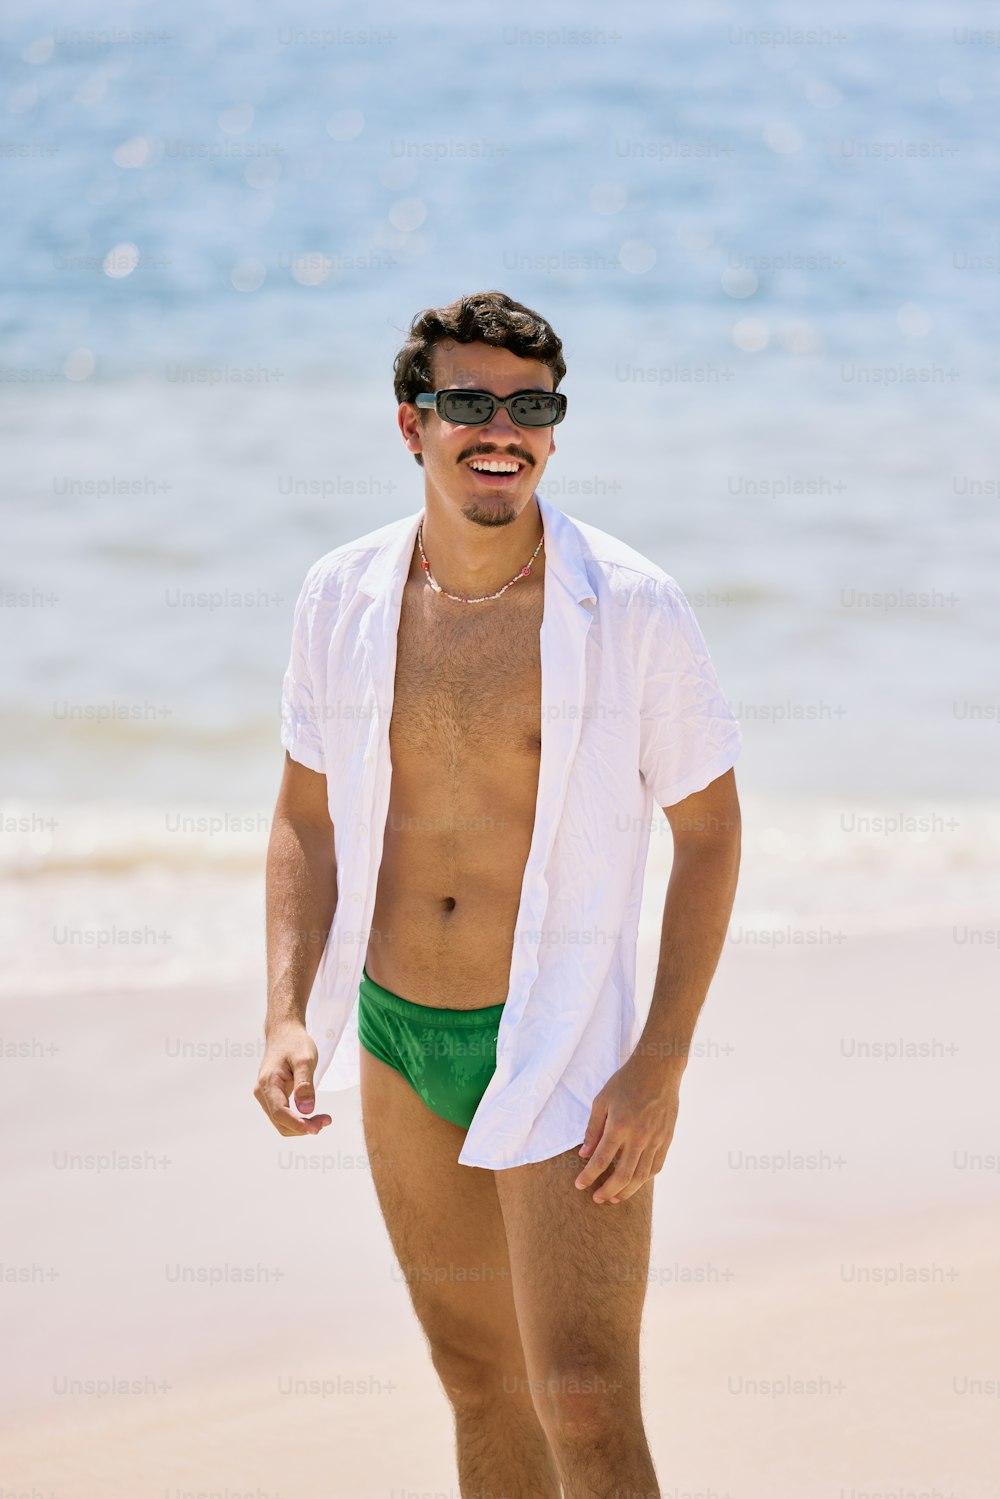 Un hombre con camisa blanca y pantalones cortos verdes en la playa